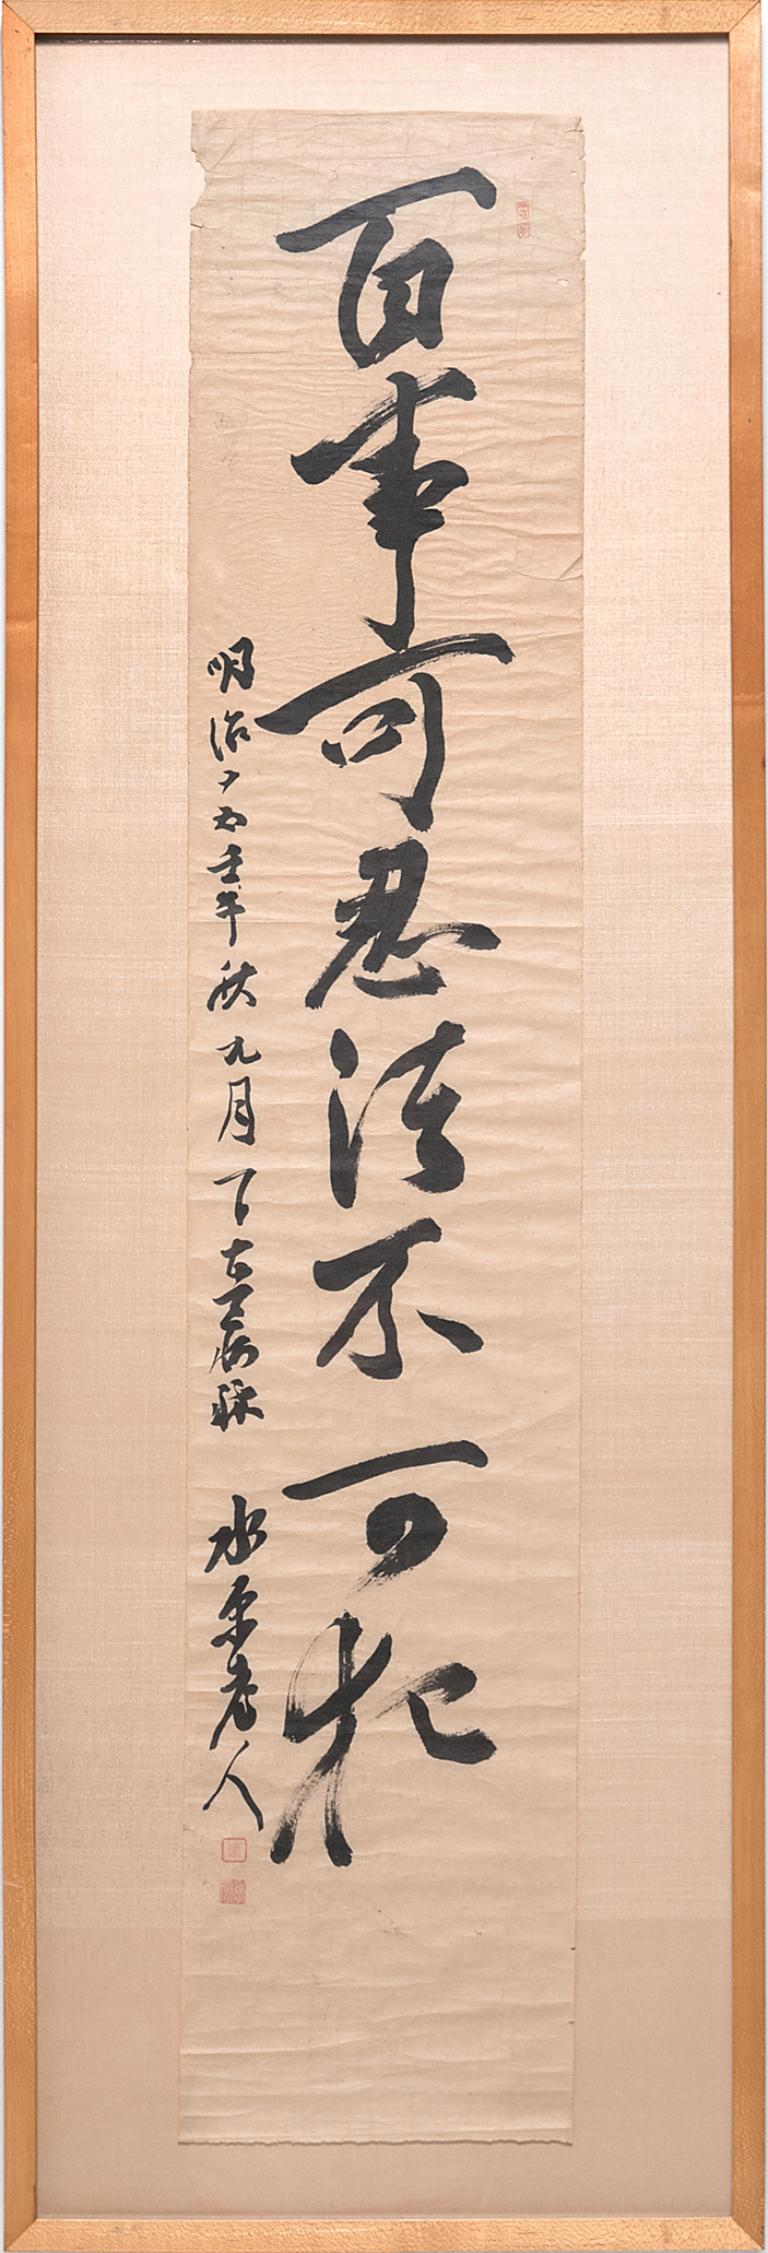 Chinesische Kalligraphie-Schnörkel, um 1920